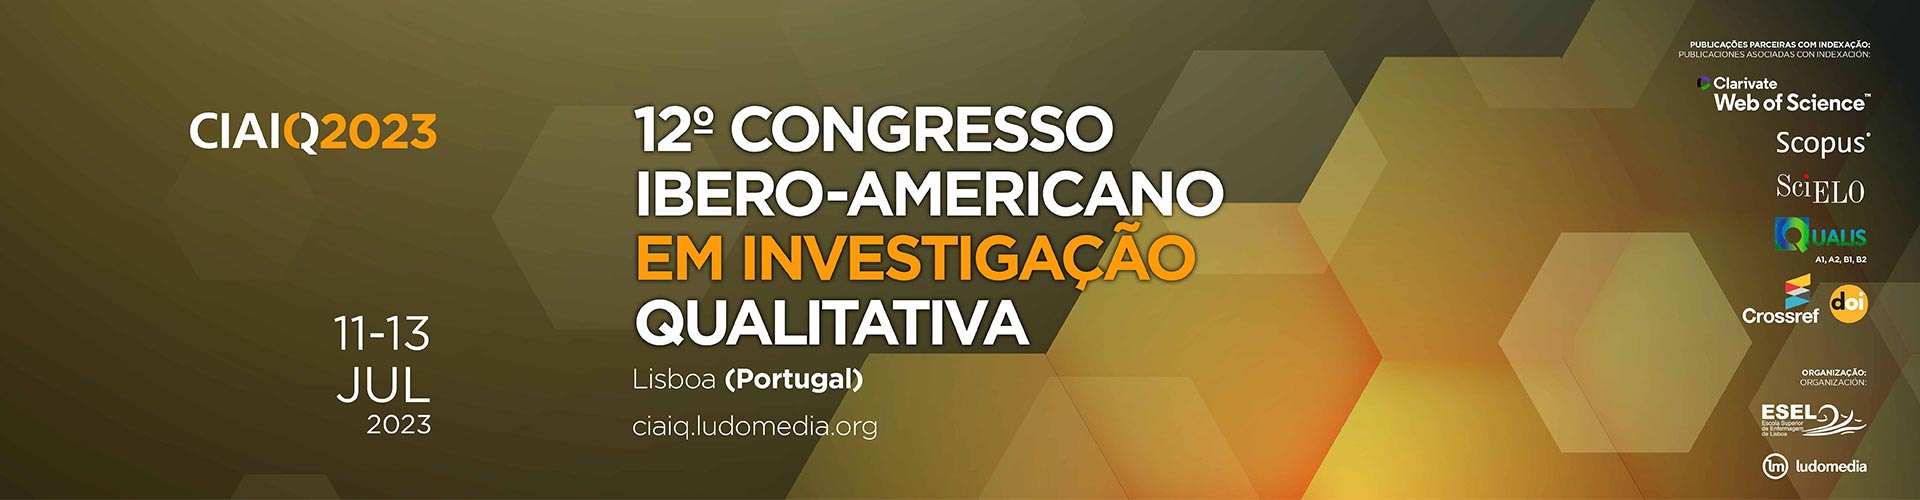 CIAIQ2023 12º Congresso Ibero-Americano em Investigação Qualitativa